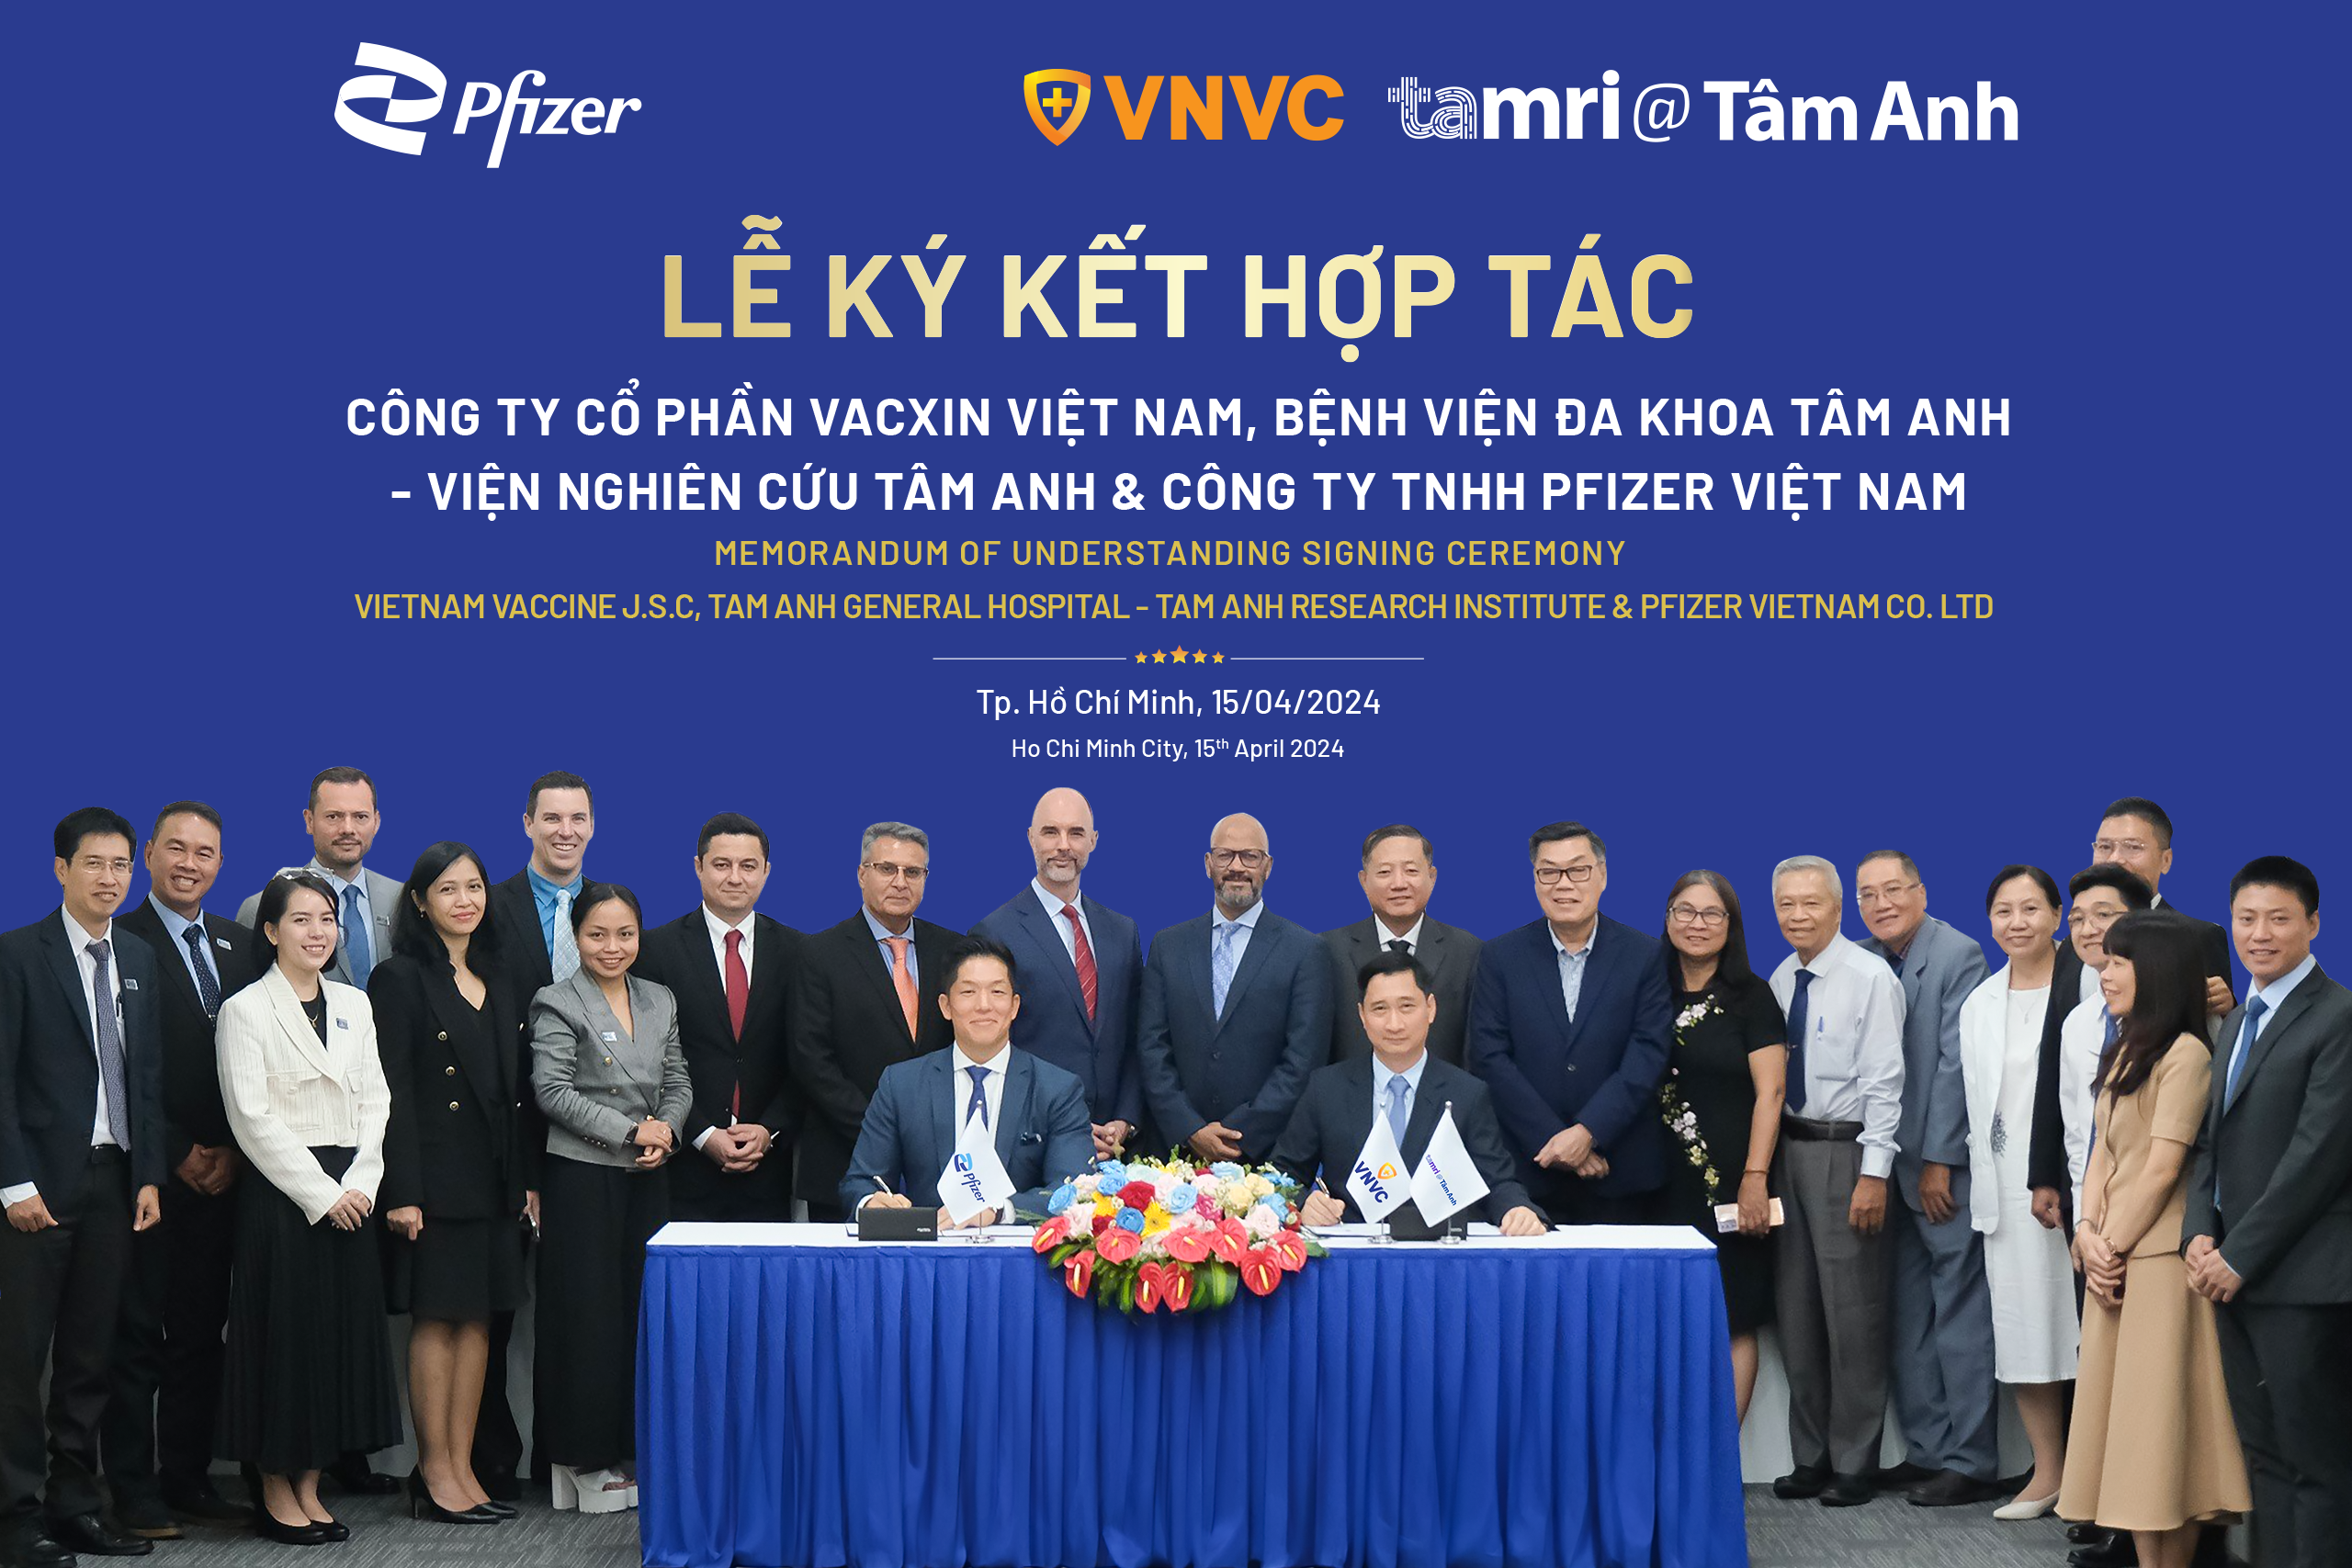 Pfizer Việt Nam, VNVC, và Tâm Anh tại lễ ký kết